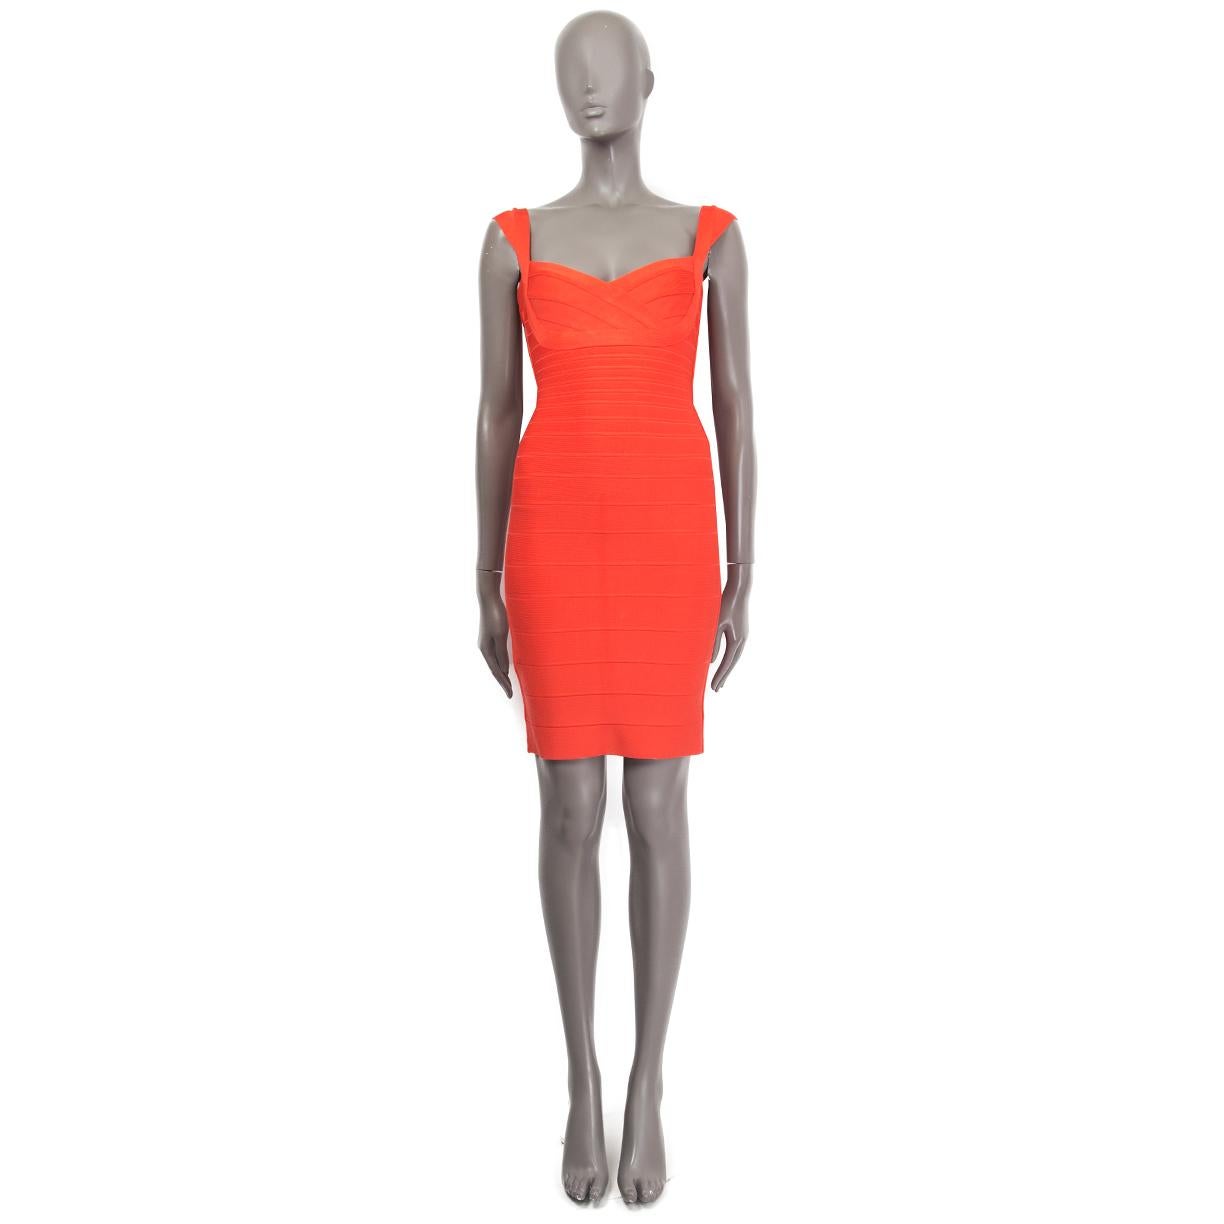 100% authentique robe bandage Herve Leger 'Abrielle' en rayonne rouge corail (91%), nylon (8%) et spandex (1%). S'ouvre avec une fermeture éclair dans le dos. Non doublé. A été porté et est en excellent état.

Mesures
Taille de